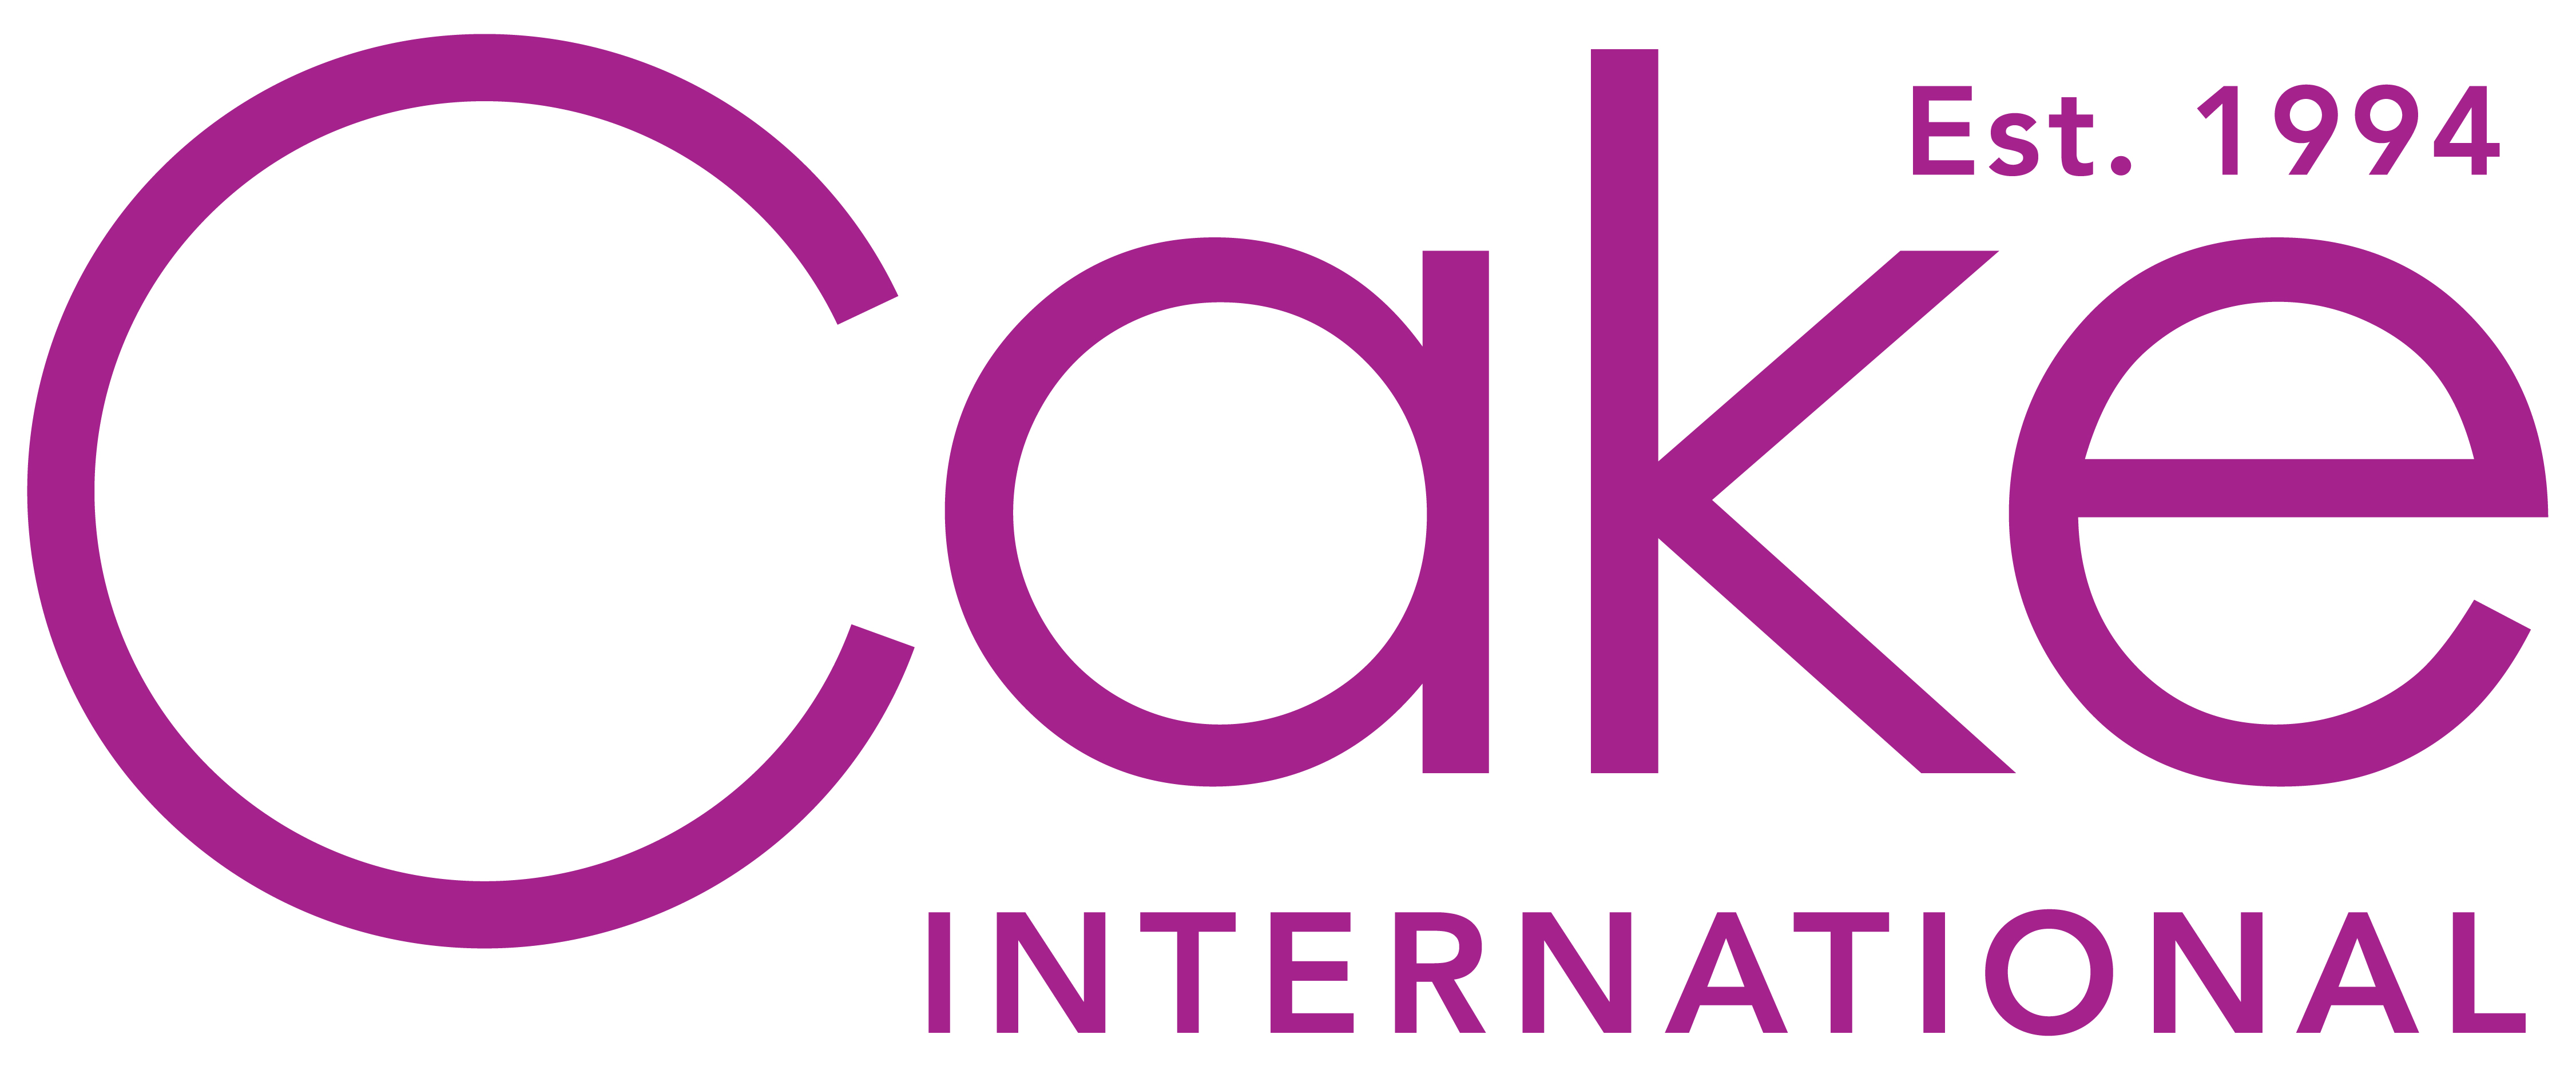 Cake-est-1994-logo.jpg